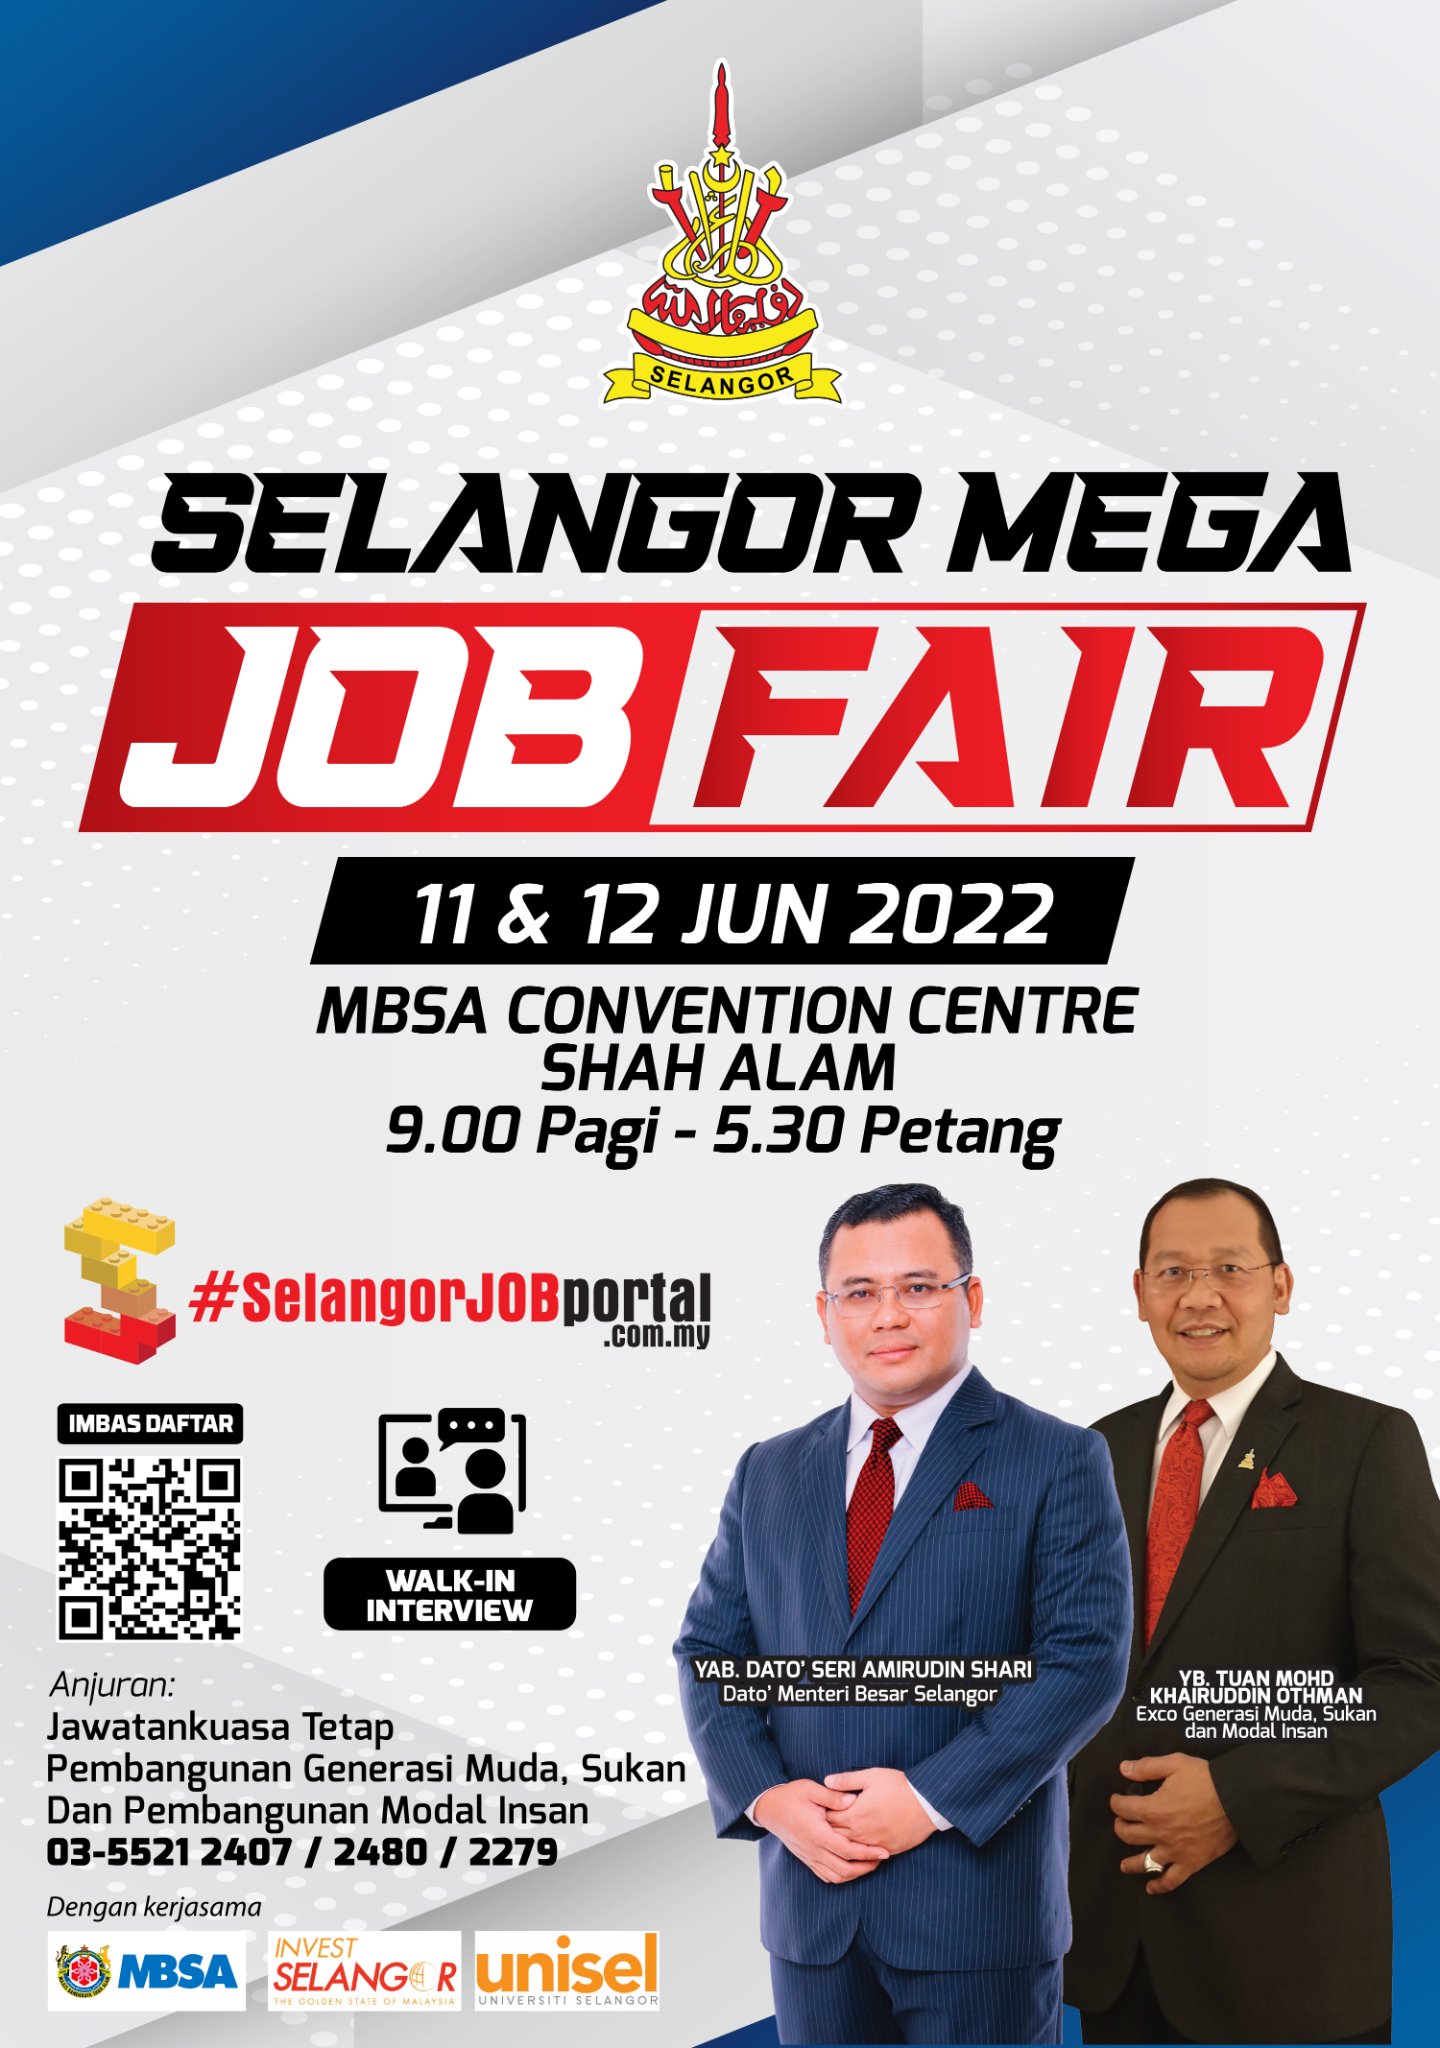 Selangor Job Fair 2022